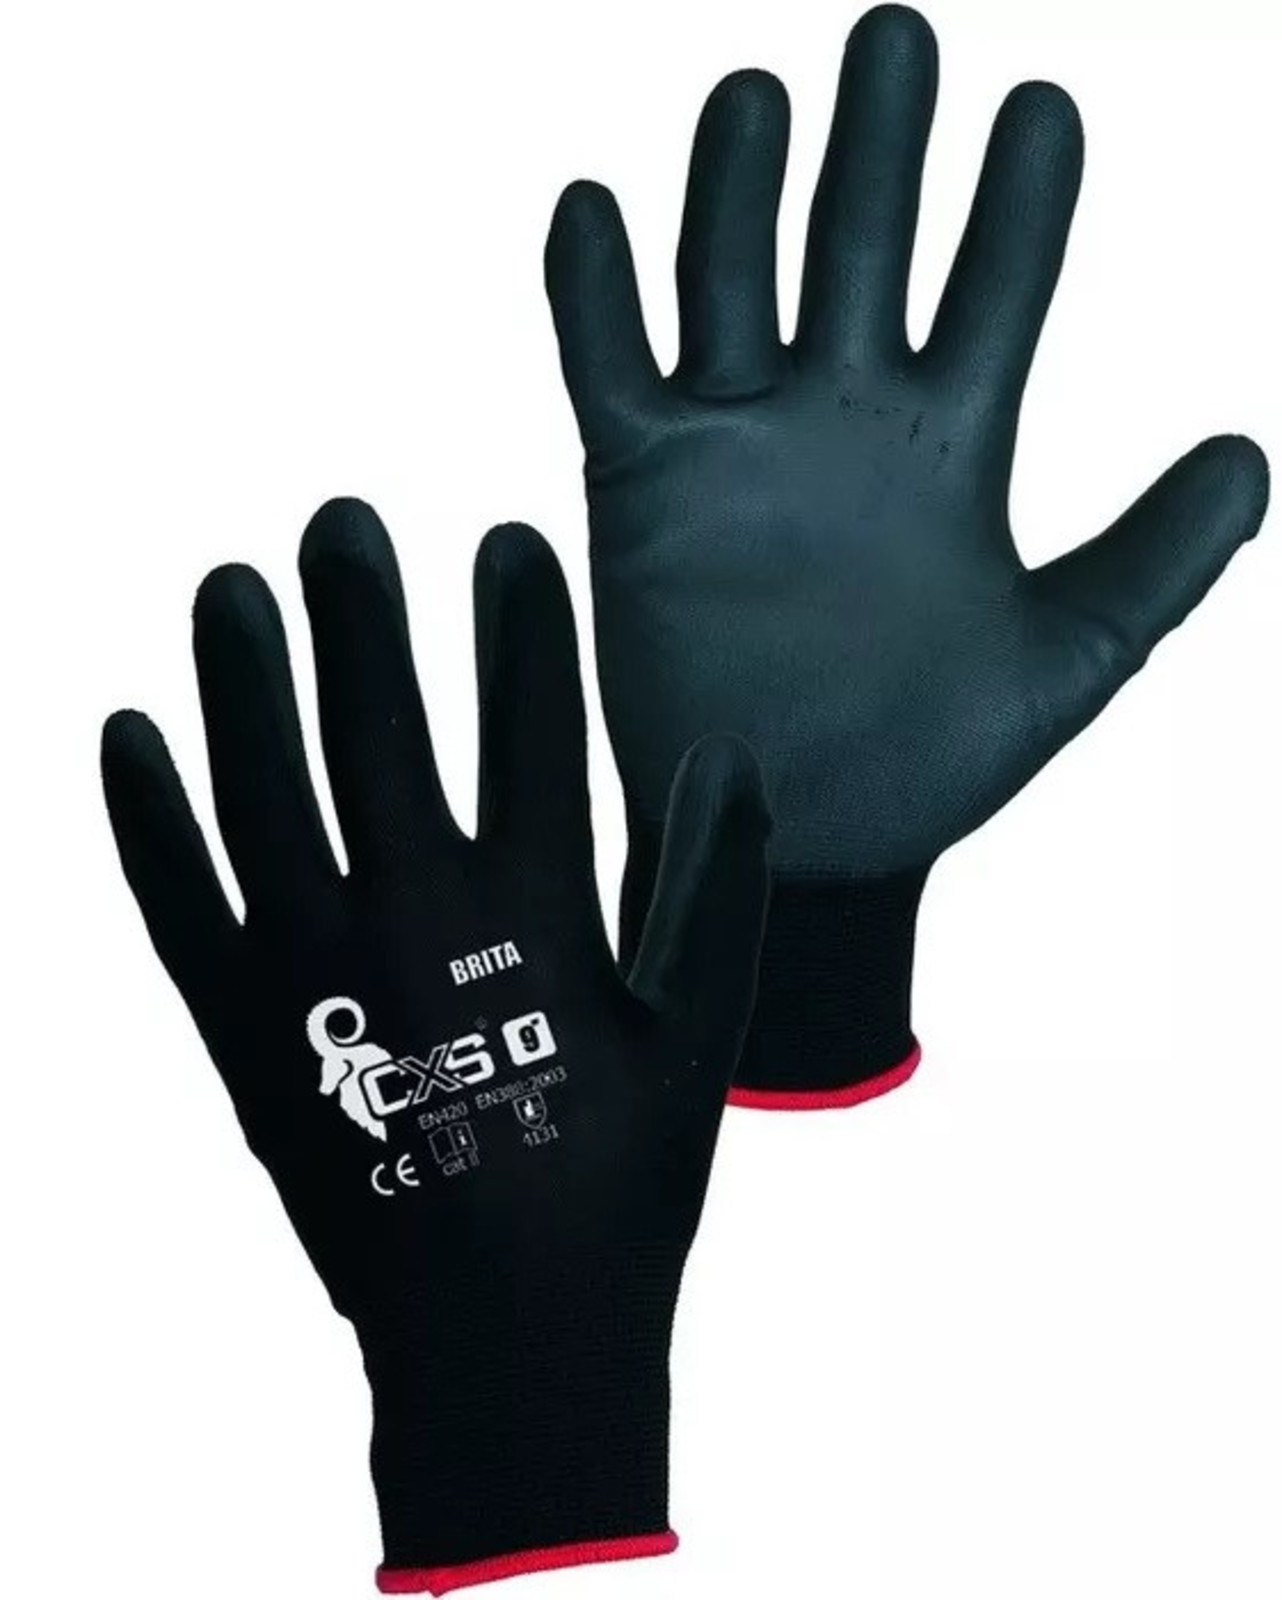 Pracovné rukavice CXS Brita čierne - veľkosť: 10/XL, farba: čierna